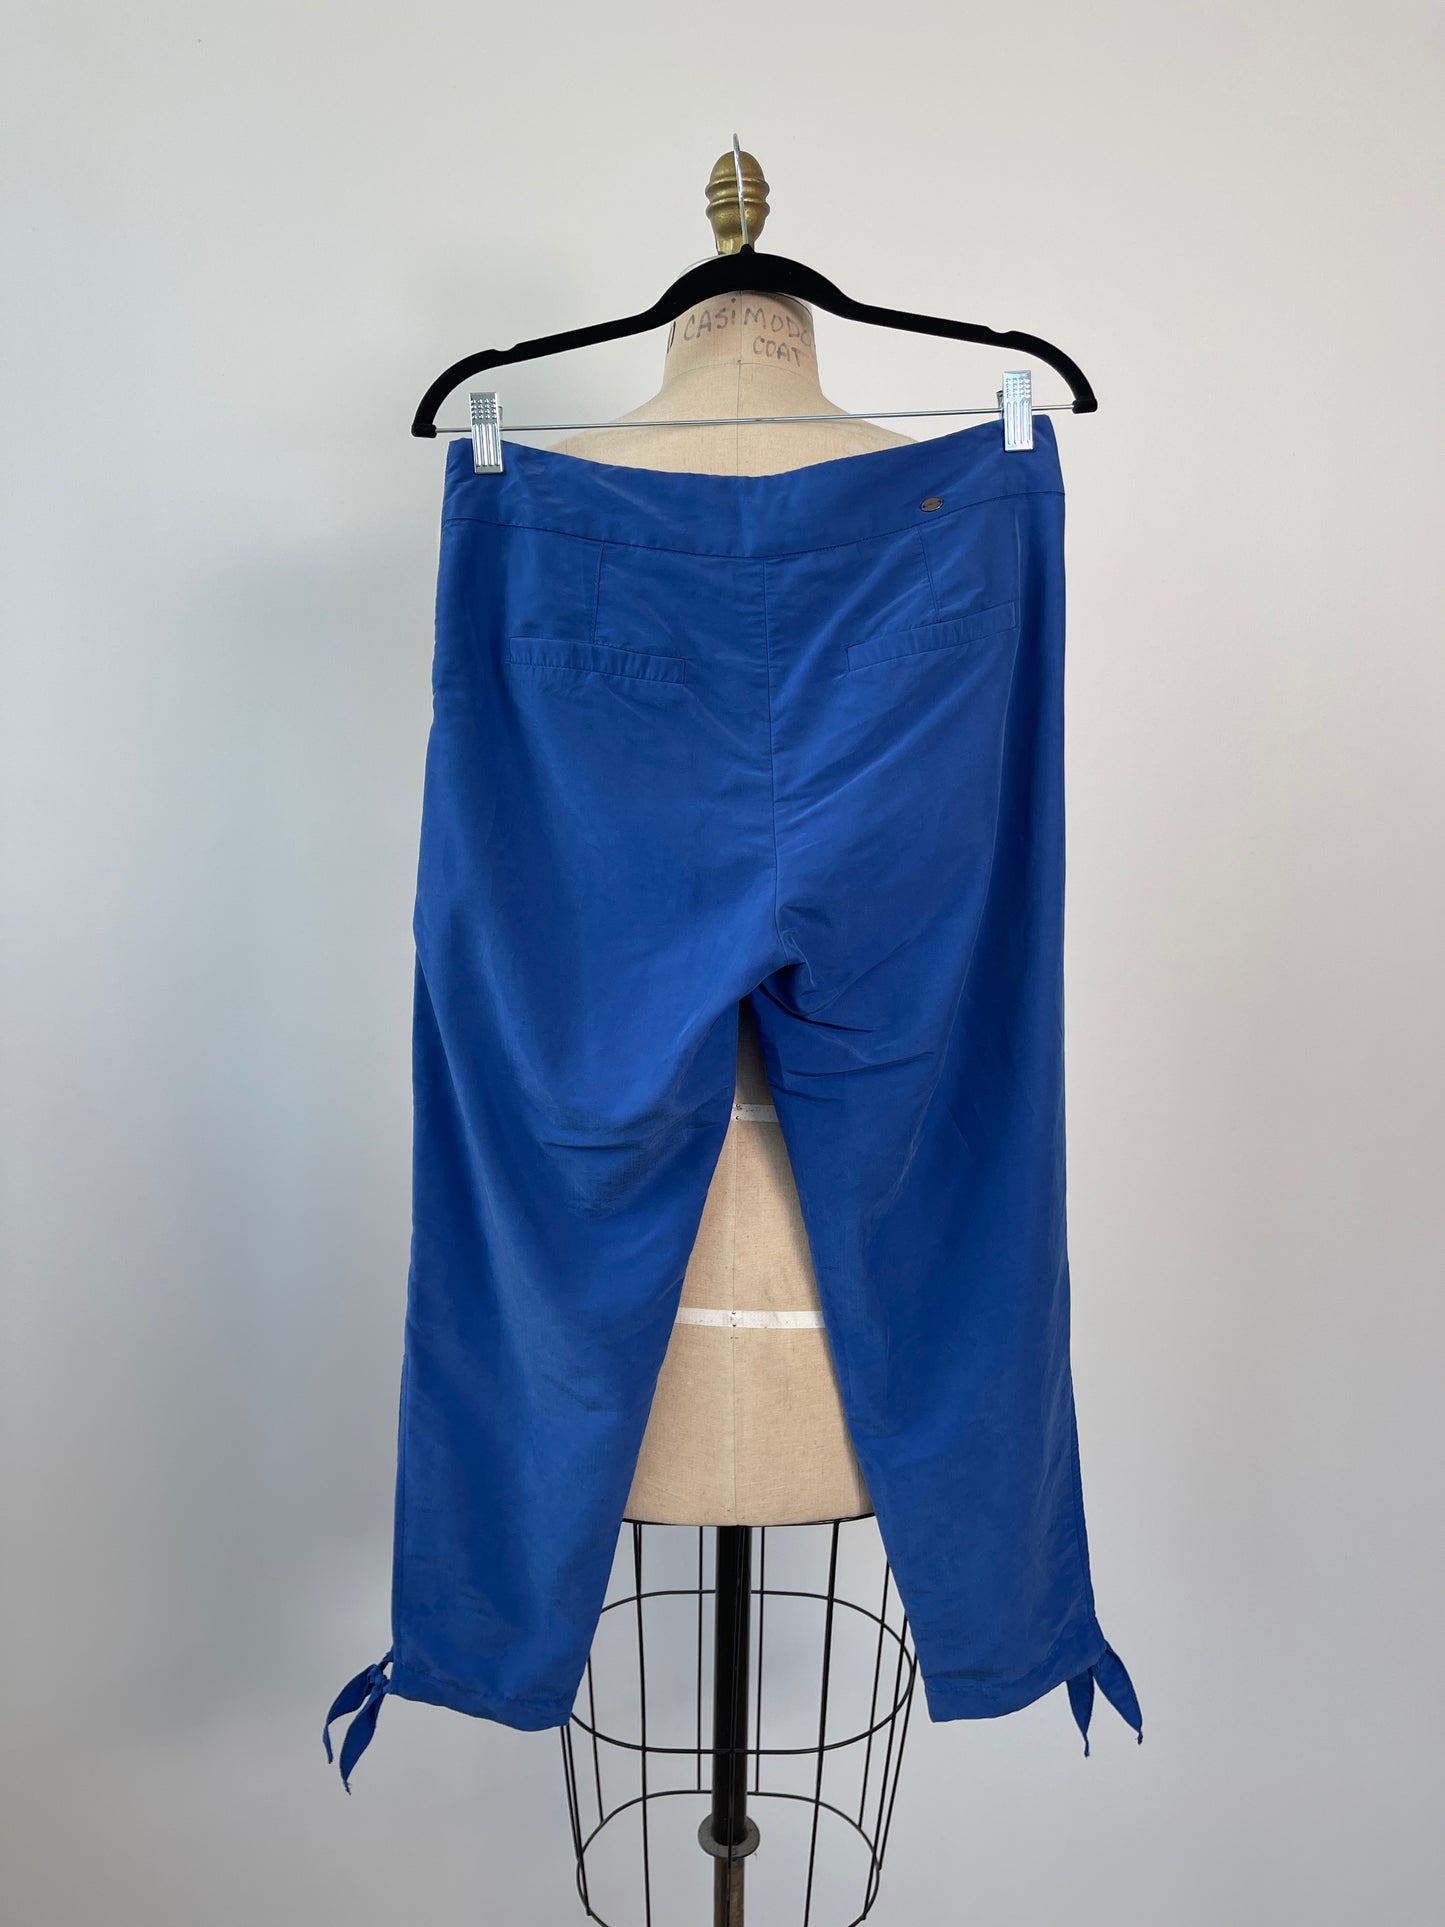 Pantalon bleu en peau de pêche lavable (XS)